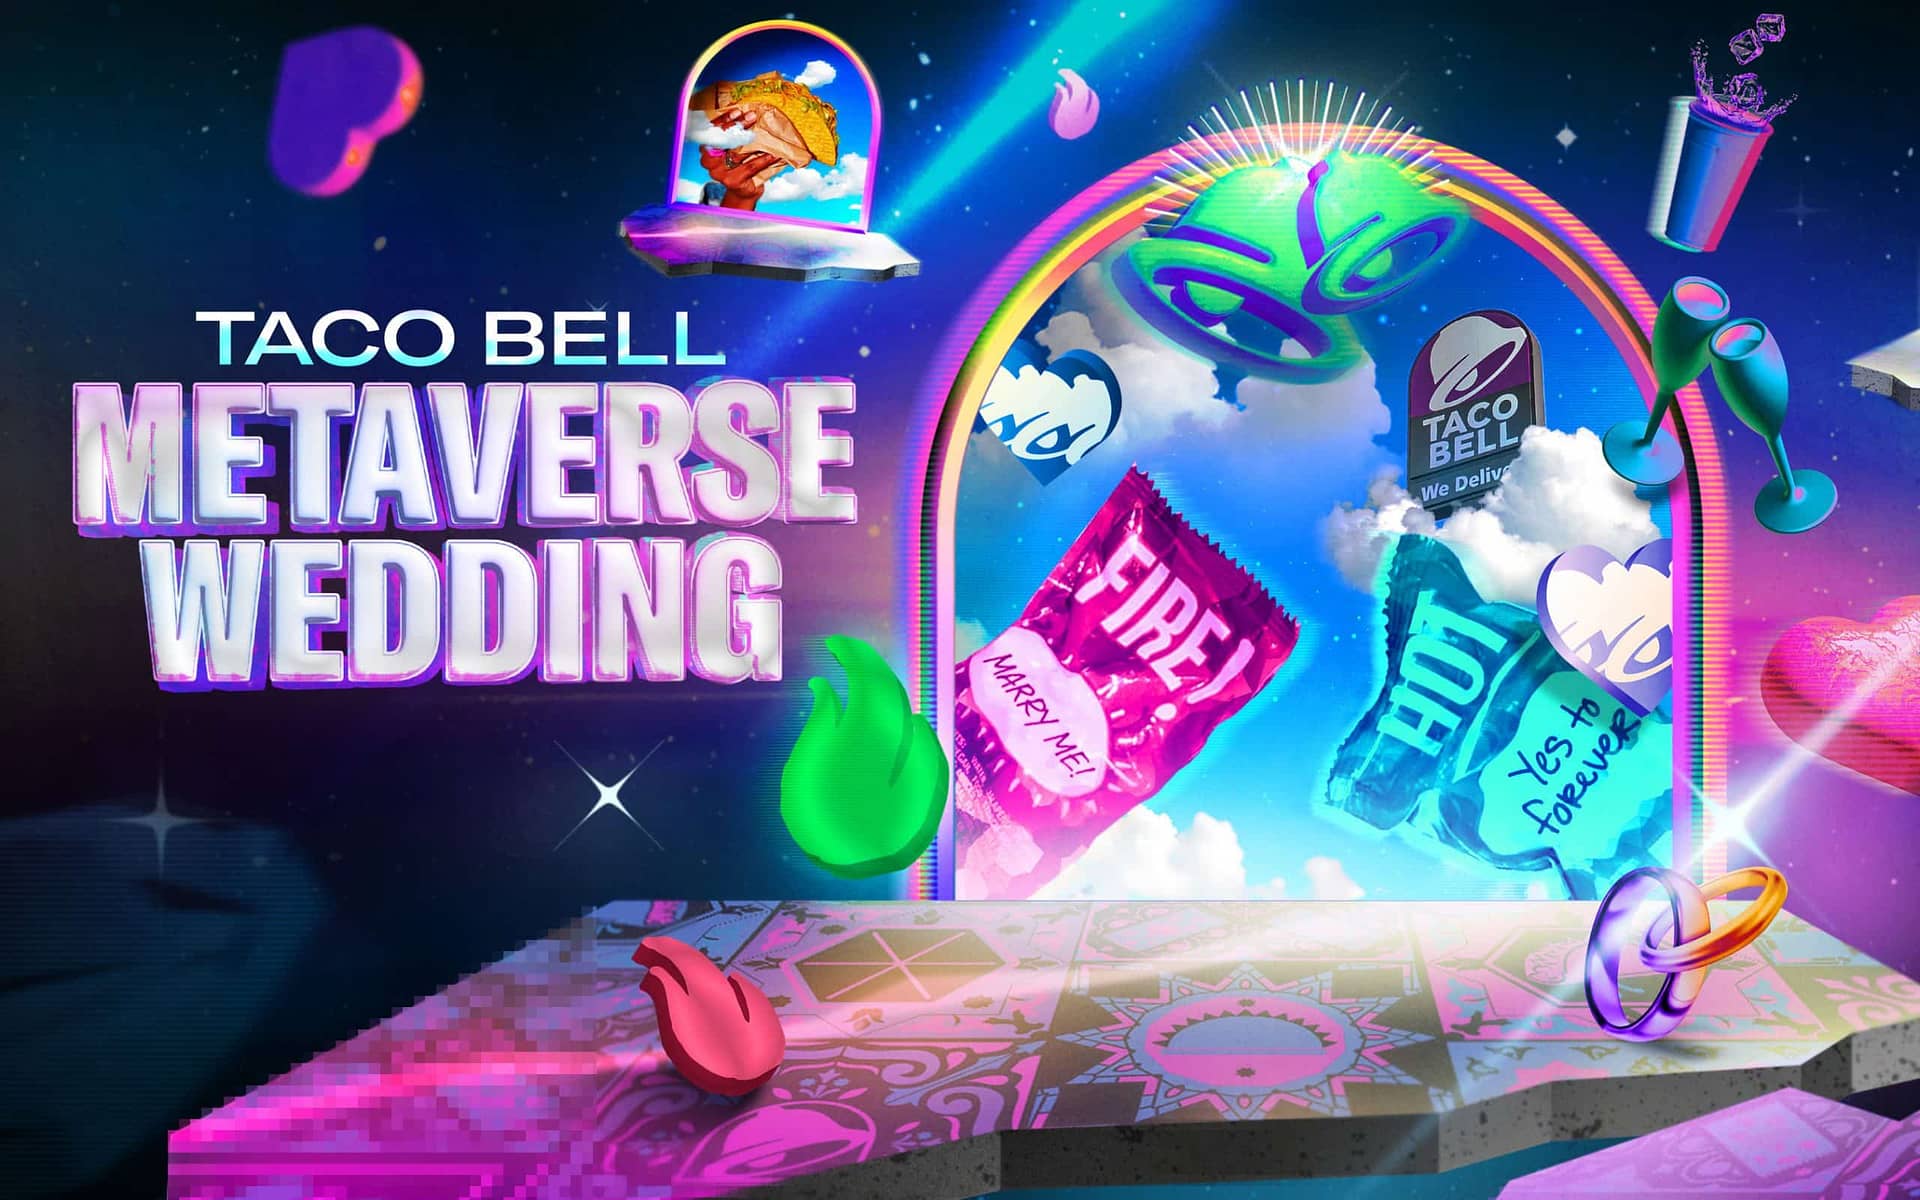 Póster de Taco Bell Metaverse Wedding que muestra un escenario virtual con anillos